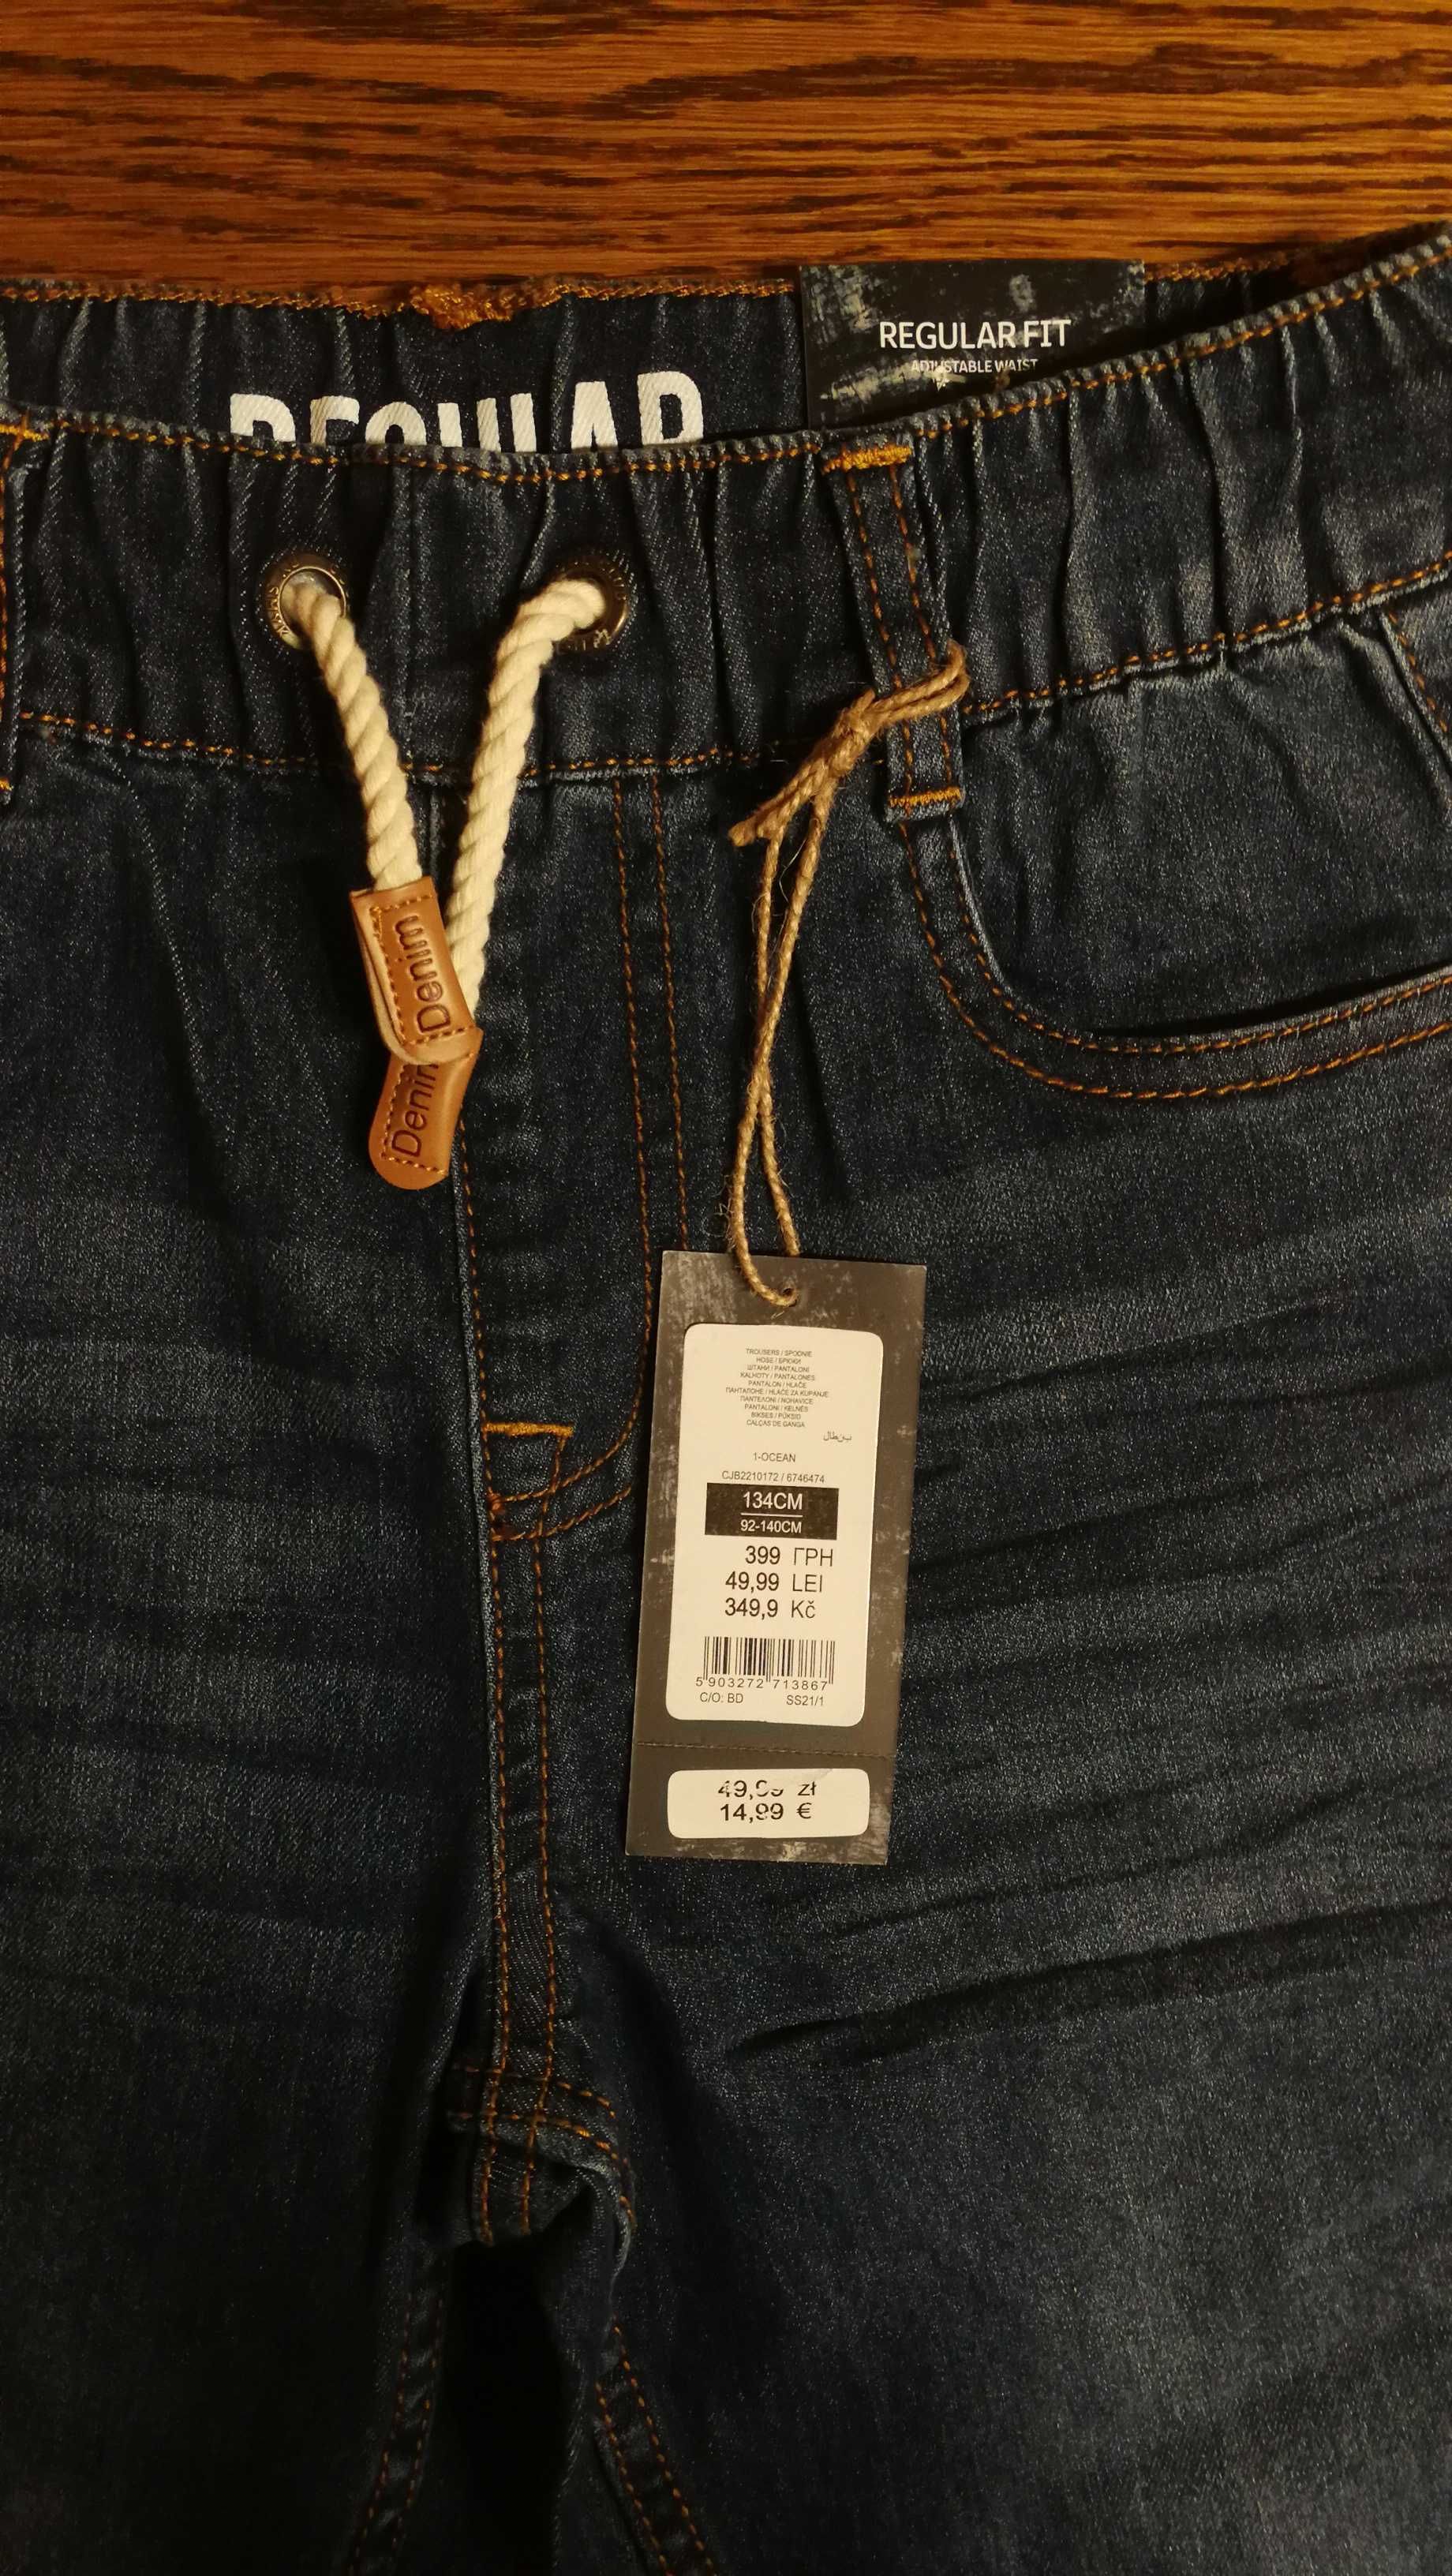 Spodnie jeansowe chłopięce 134cm, nowe Cool Cub Denim collection